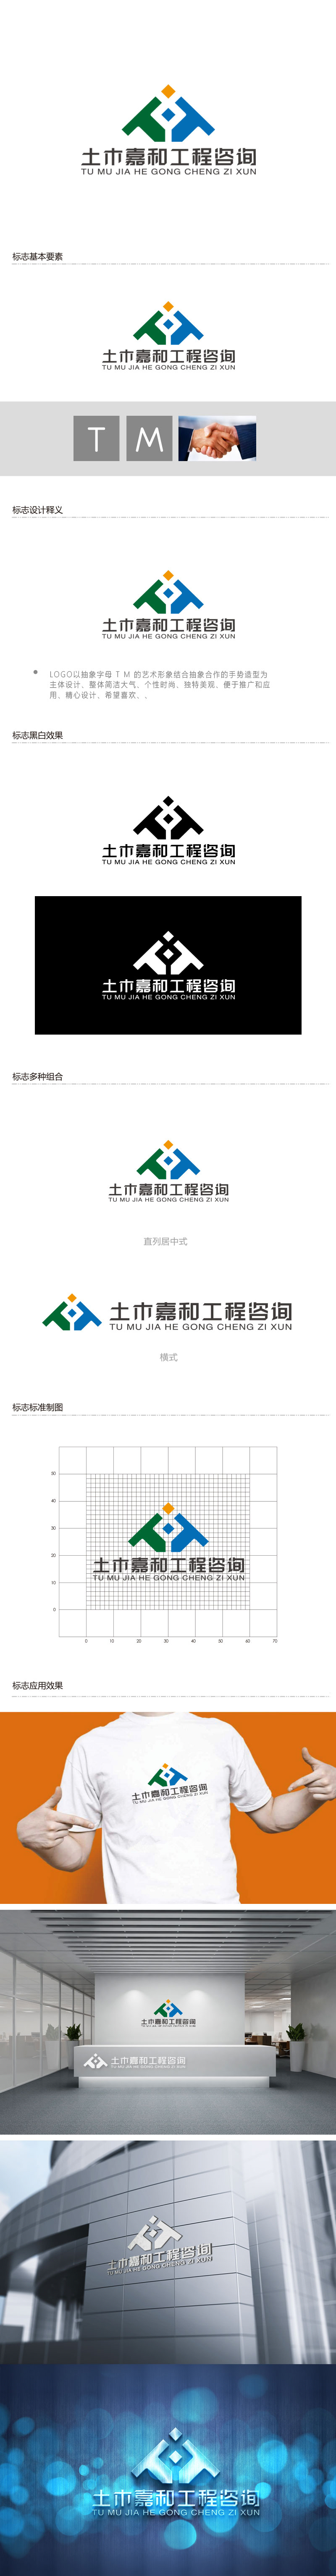 周金进的北京土木嘉和工程咨询有限公司logo设计